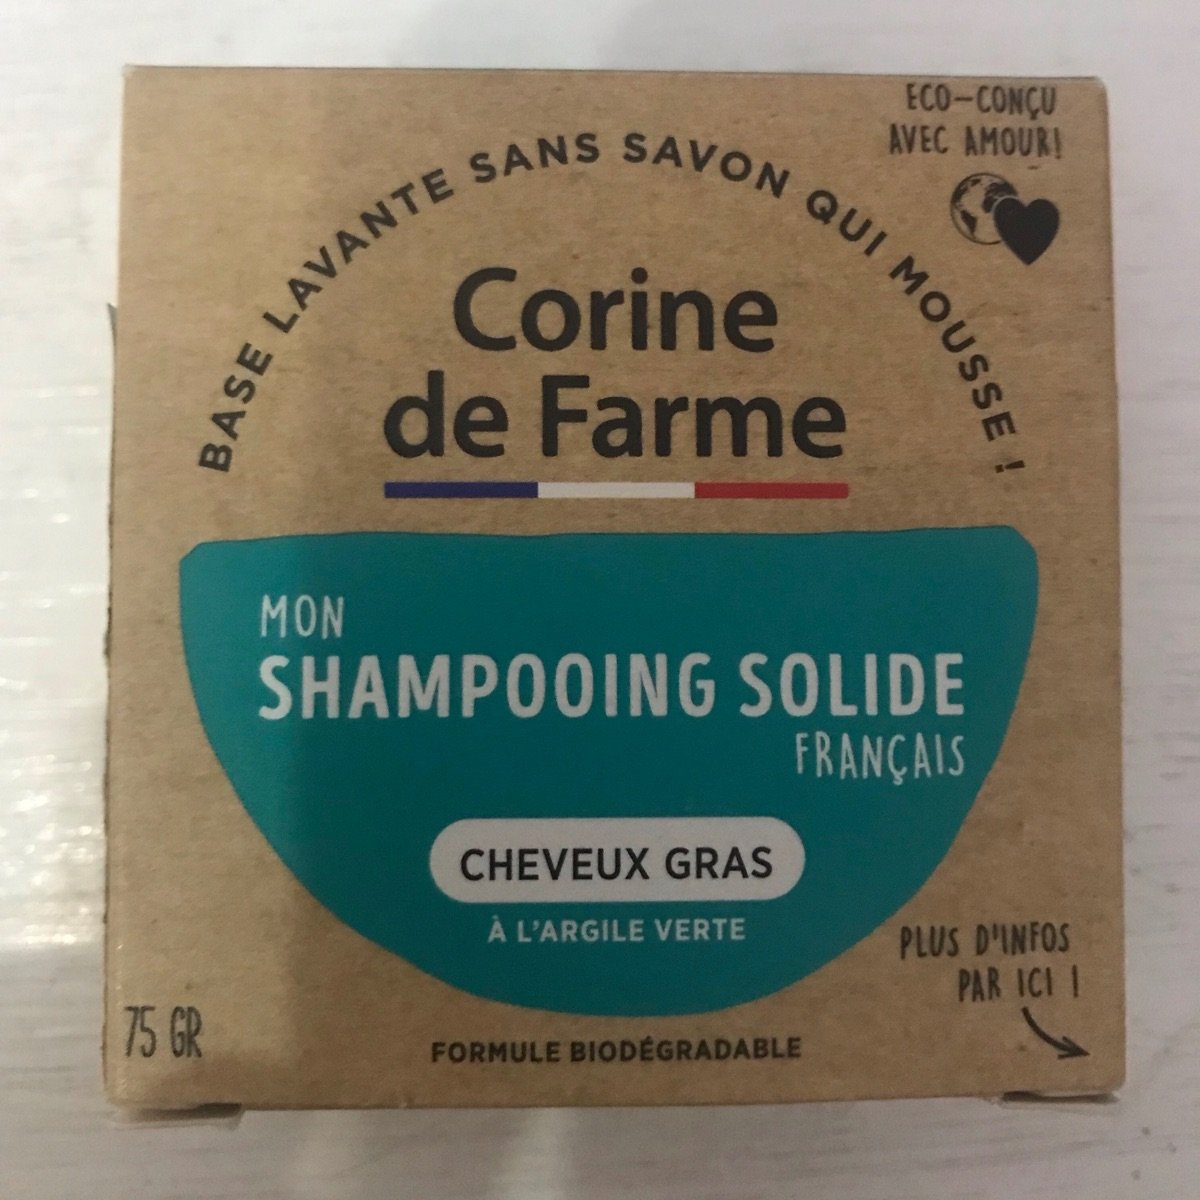 Corine de farme Shampoo Sólido Reviews | abillion